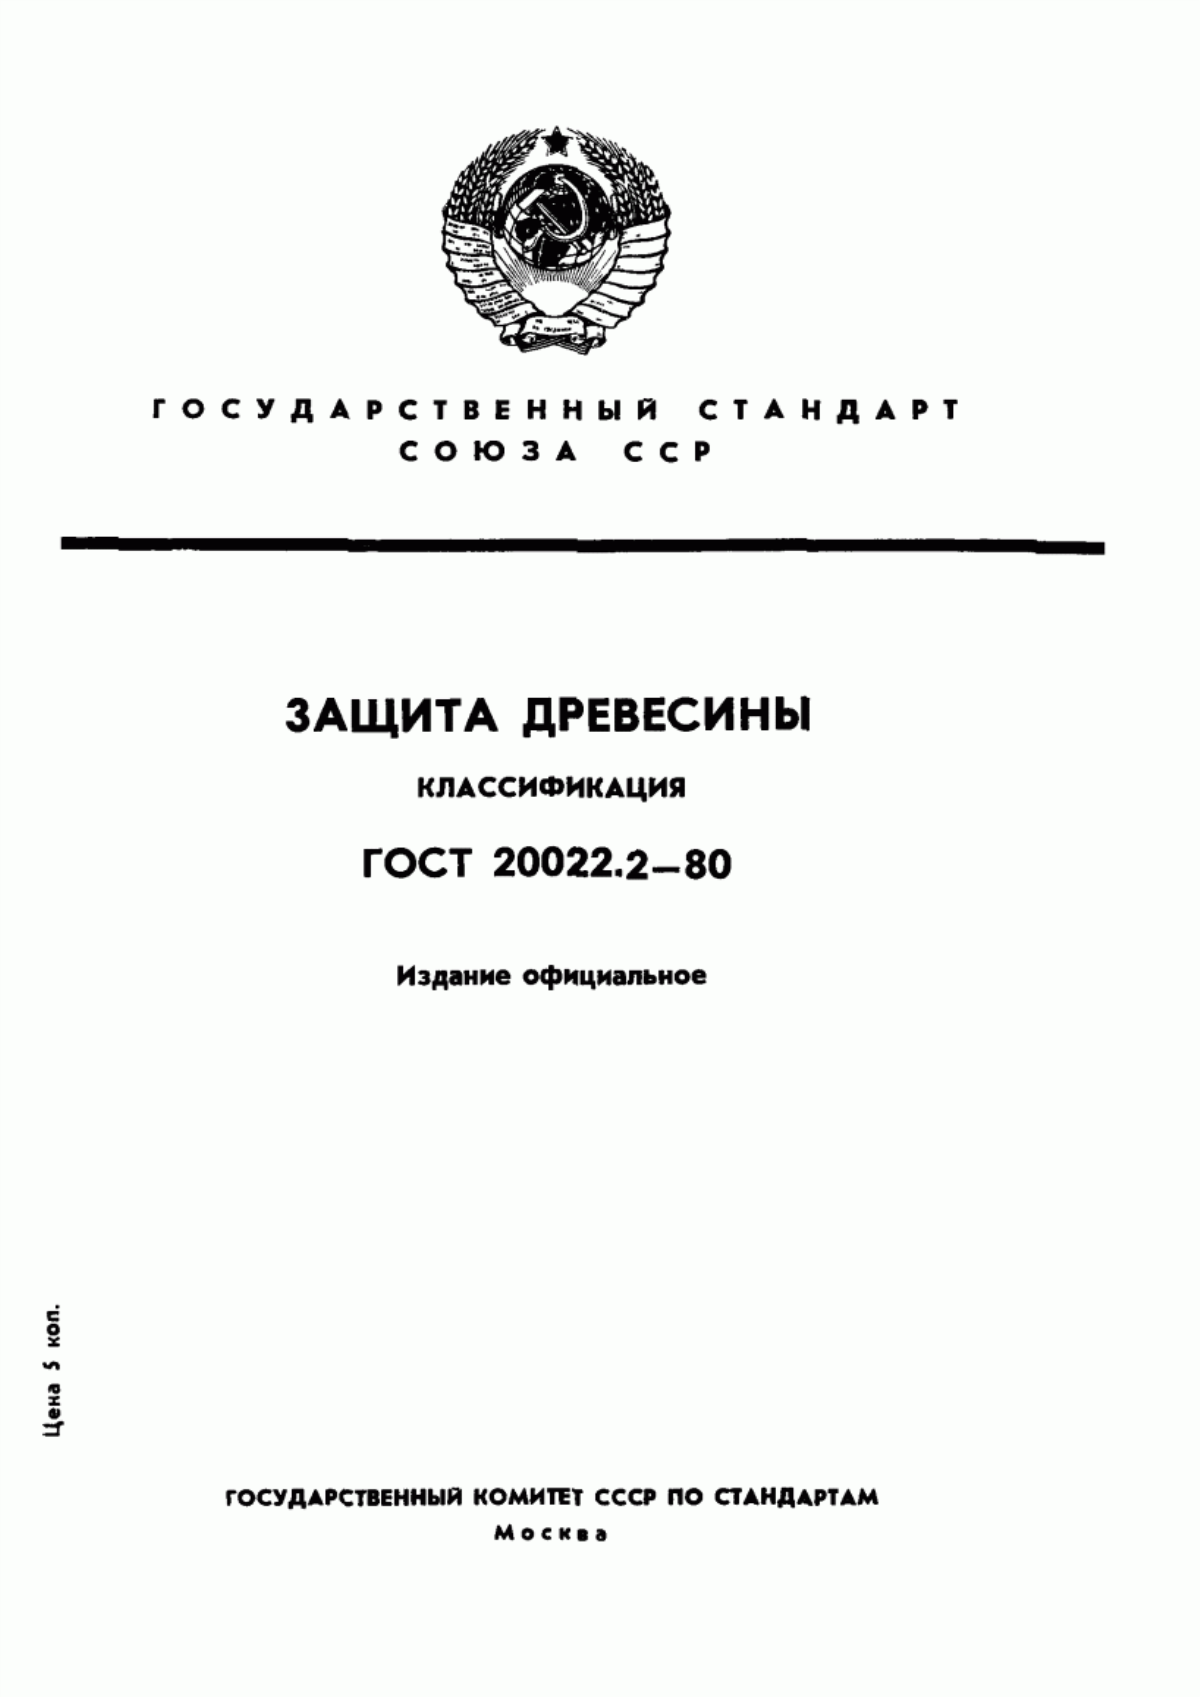 ГОСТ 20022.2-80 Защита древесины. Классификация